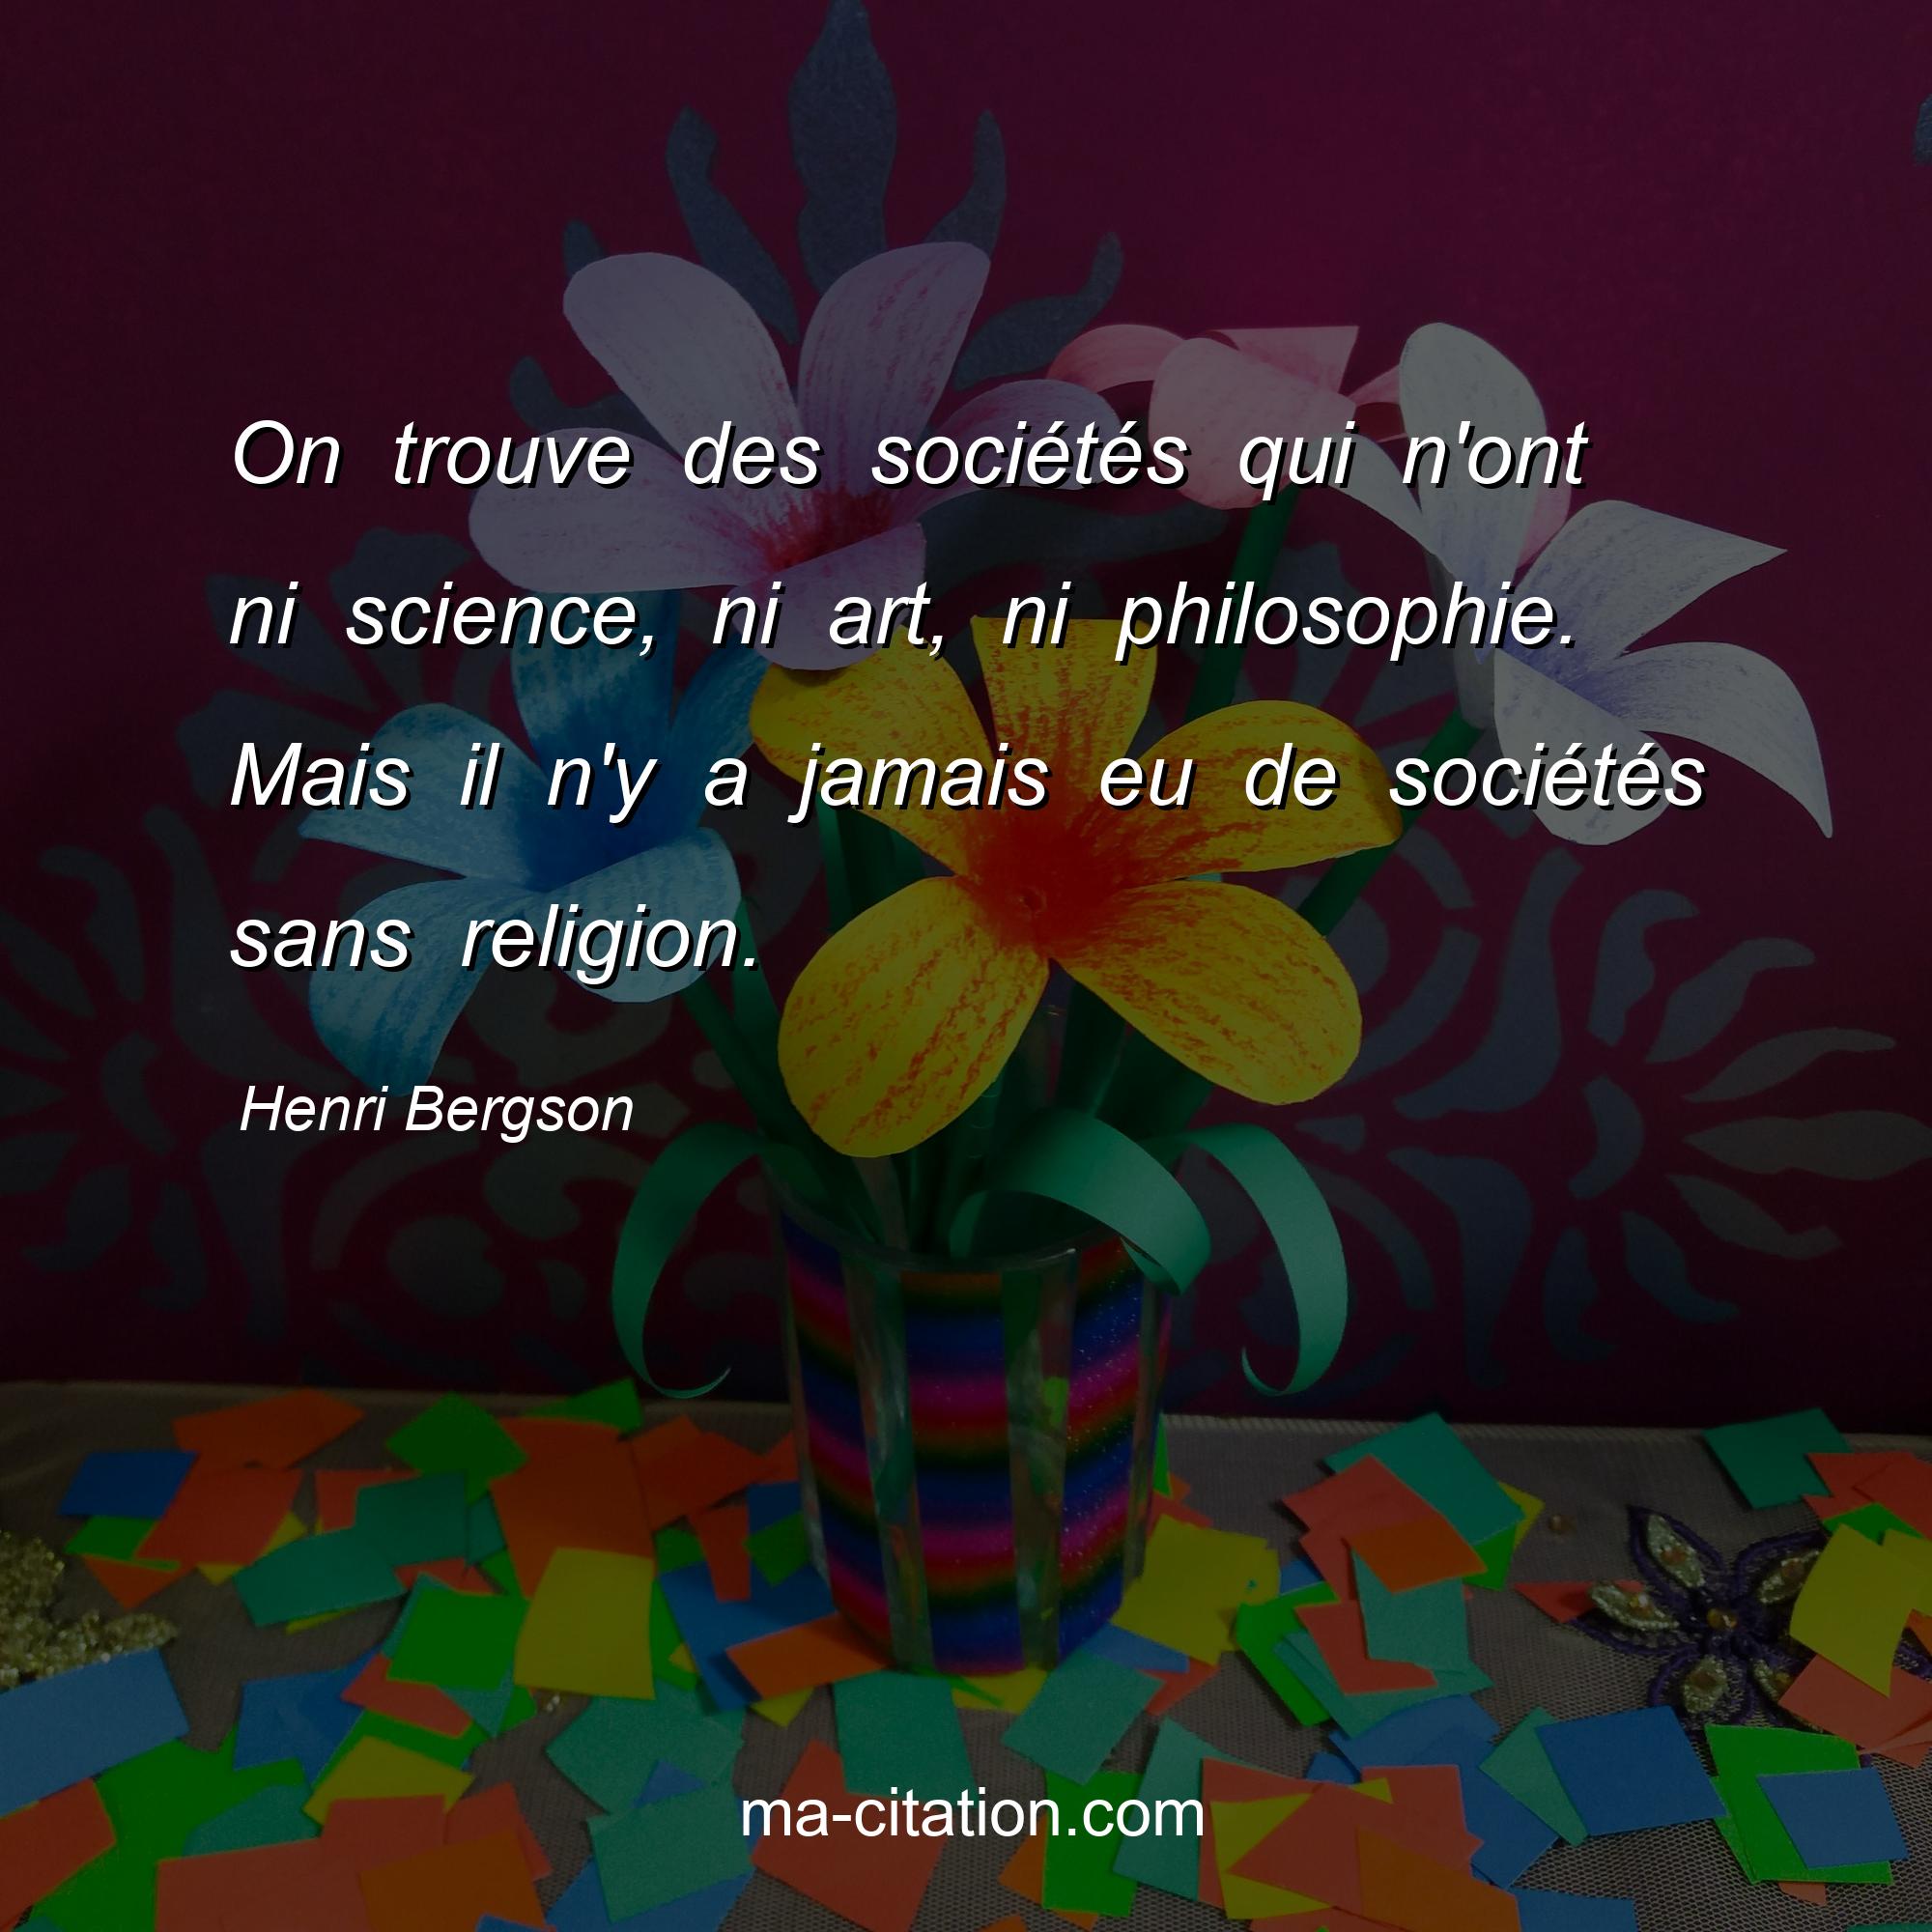 Henri Bergson : On trouve des sociétés qui n'ont ni science, ni art, ni philosophie. Mais il n'y a jamais eu de sociétés sans religion.